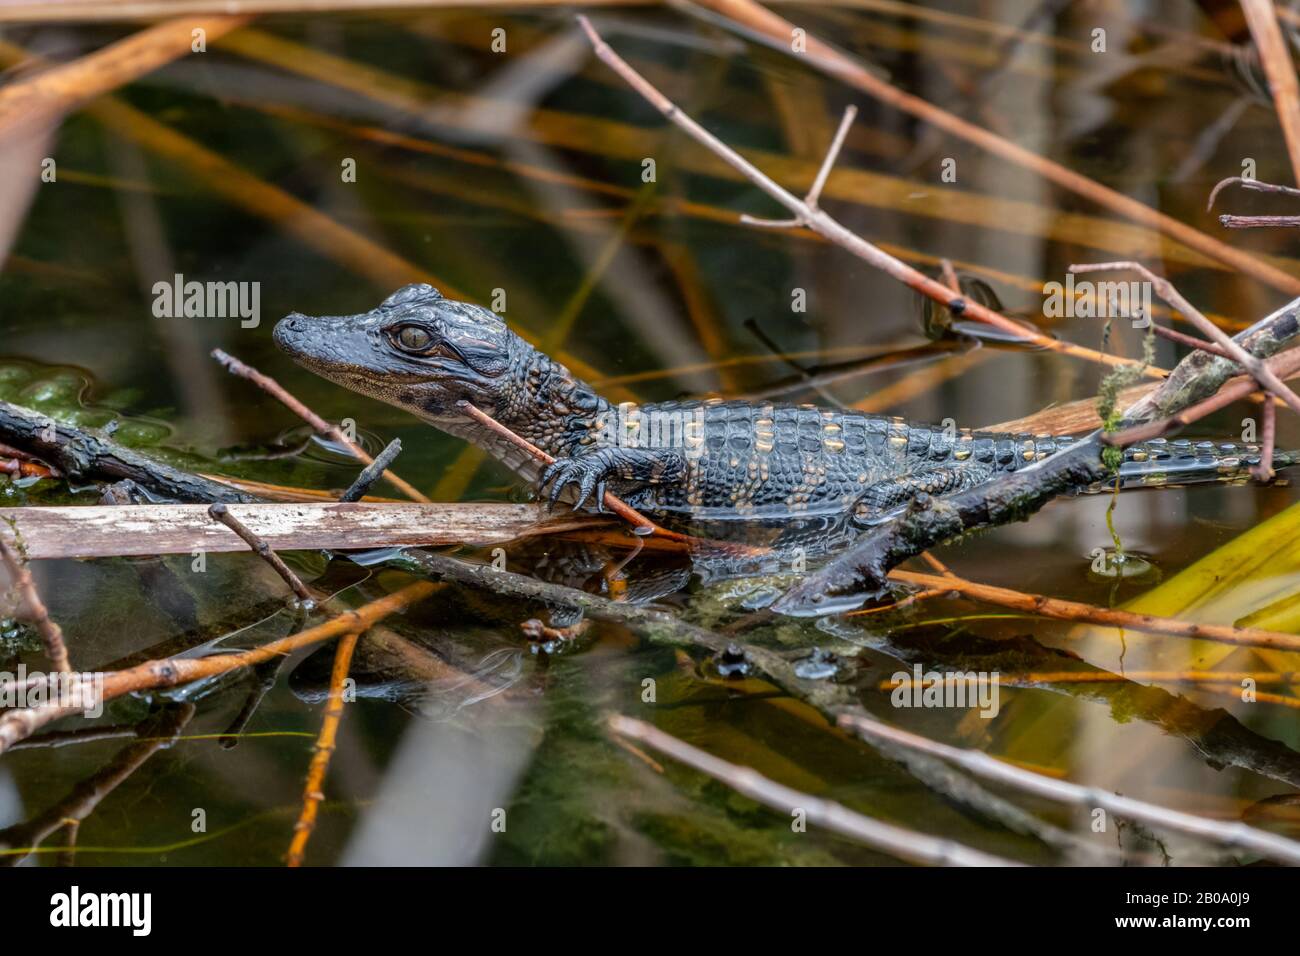 Nahaufnahme eines jungen amerikanischen Alligators (Alligator mississippiensis), der auf Ästen im Wasser in Florida, USA steht. Stockfoto